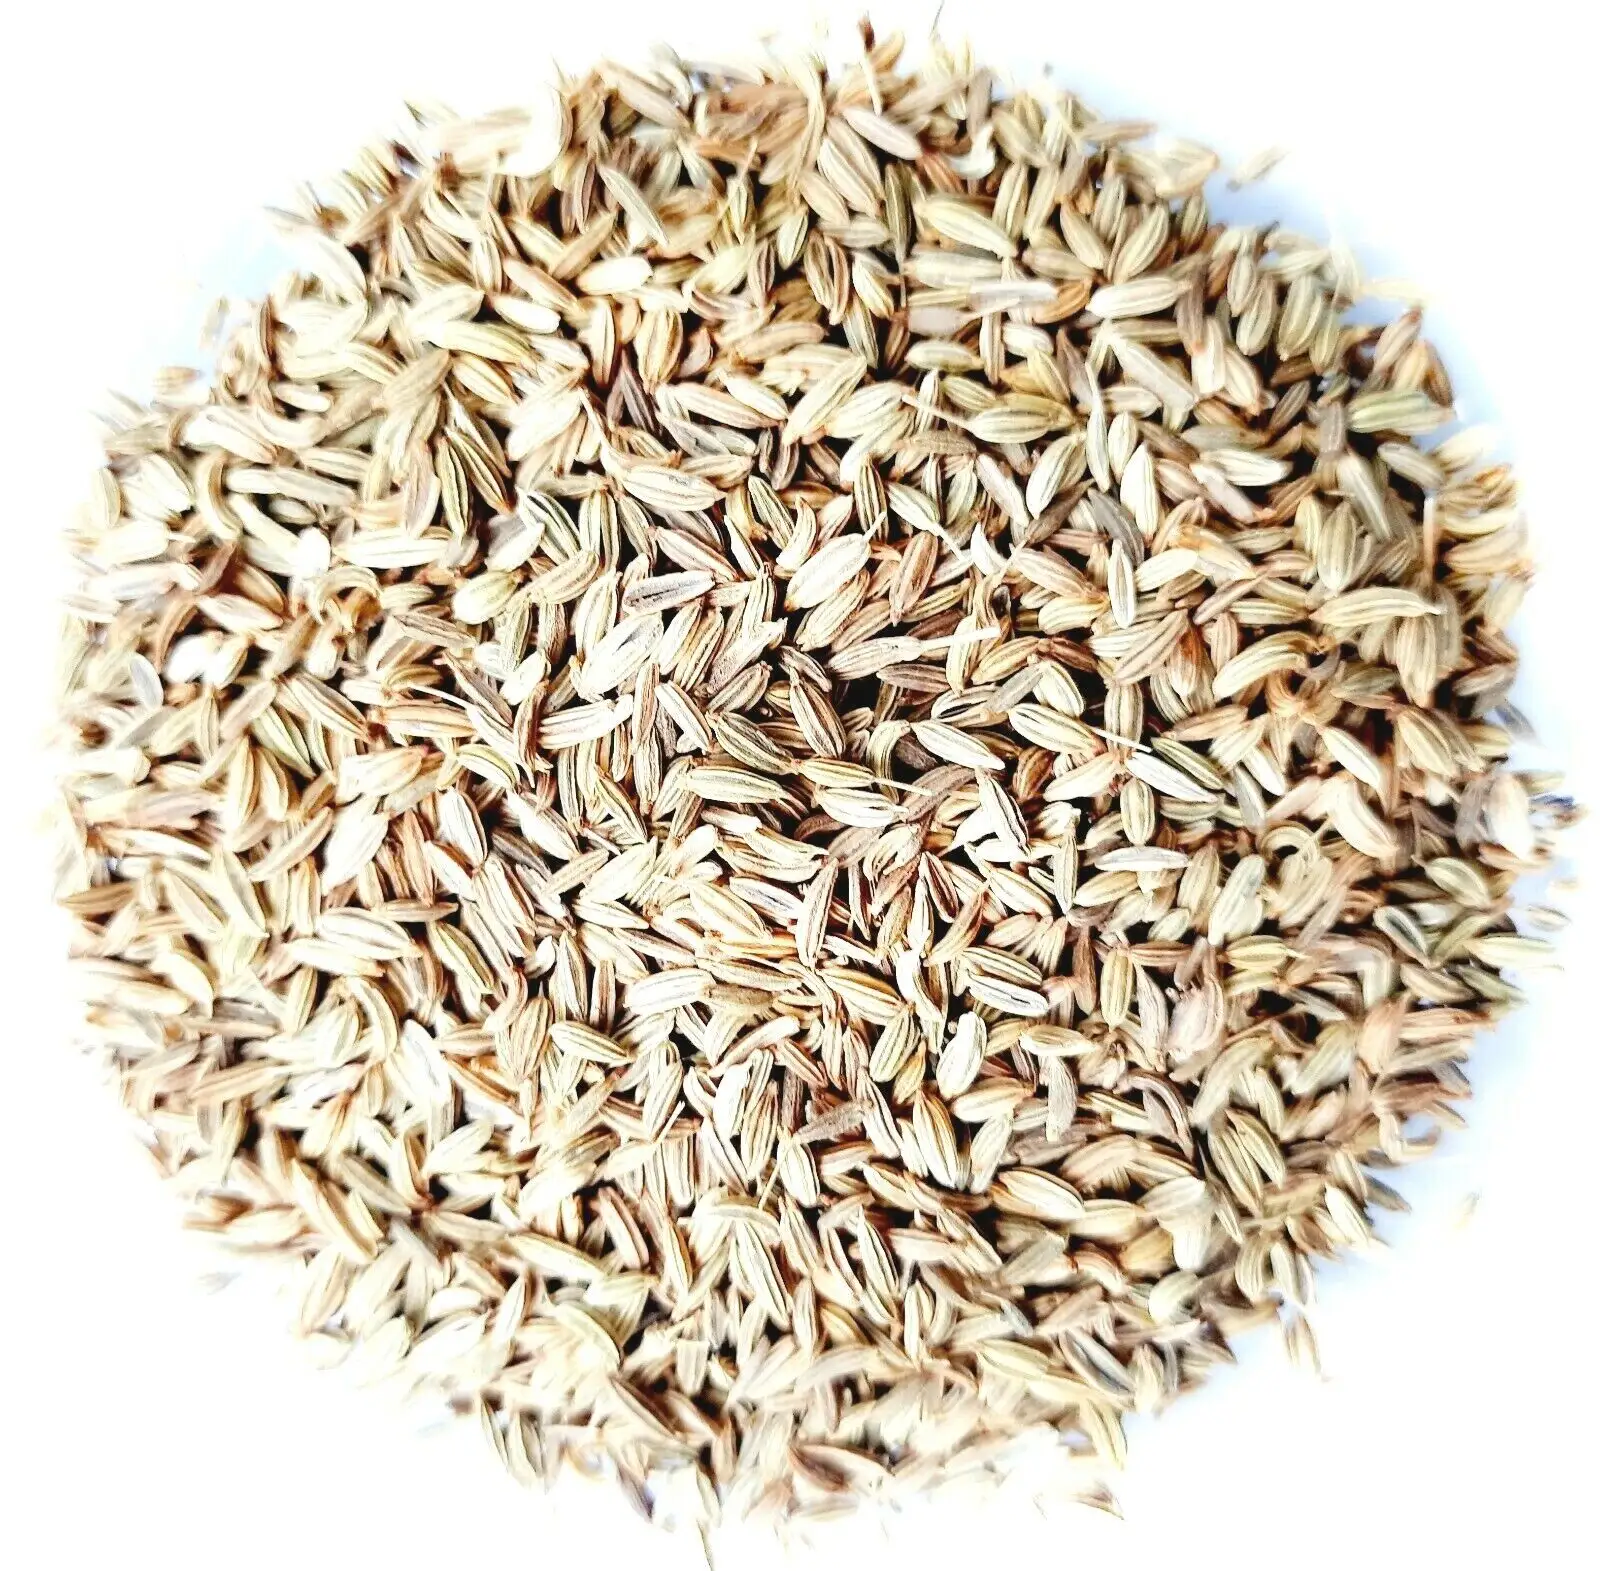 Semillas de comino secas de alta calidad, semillas de hinojo enteras